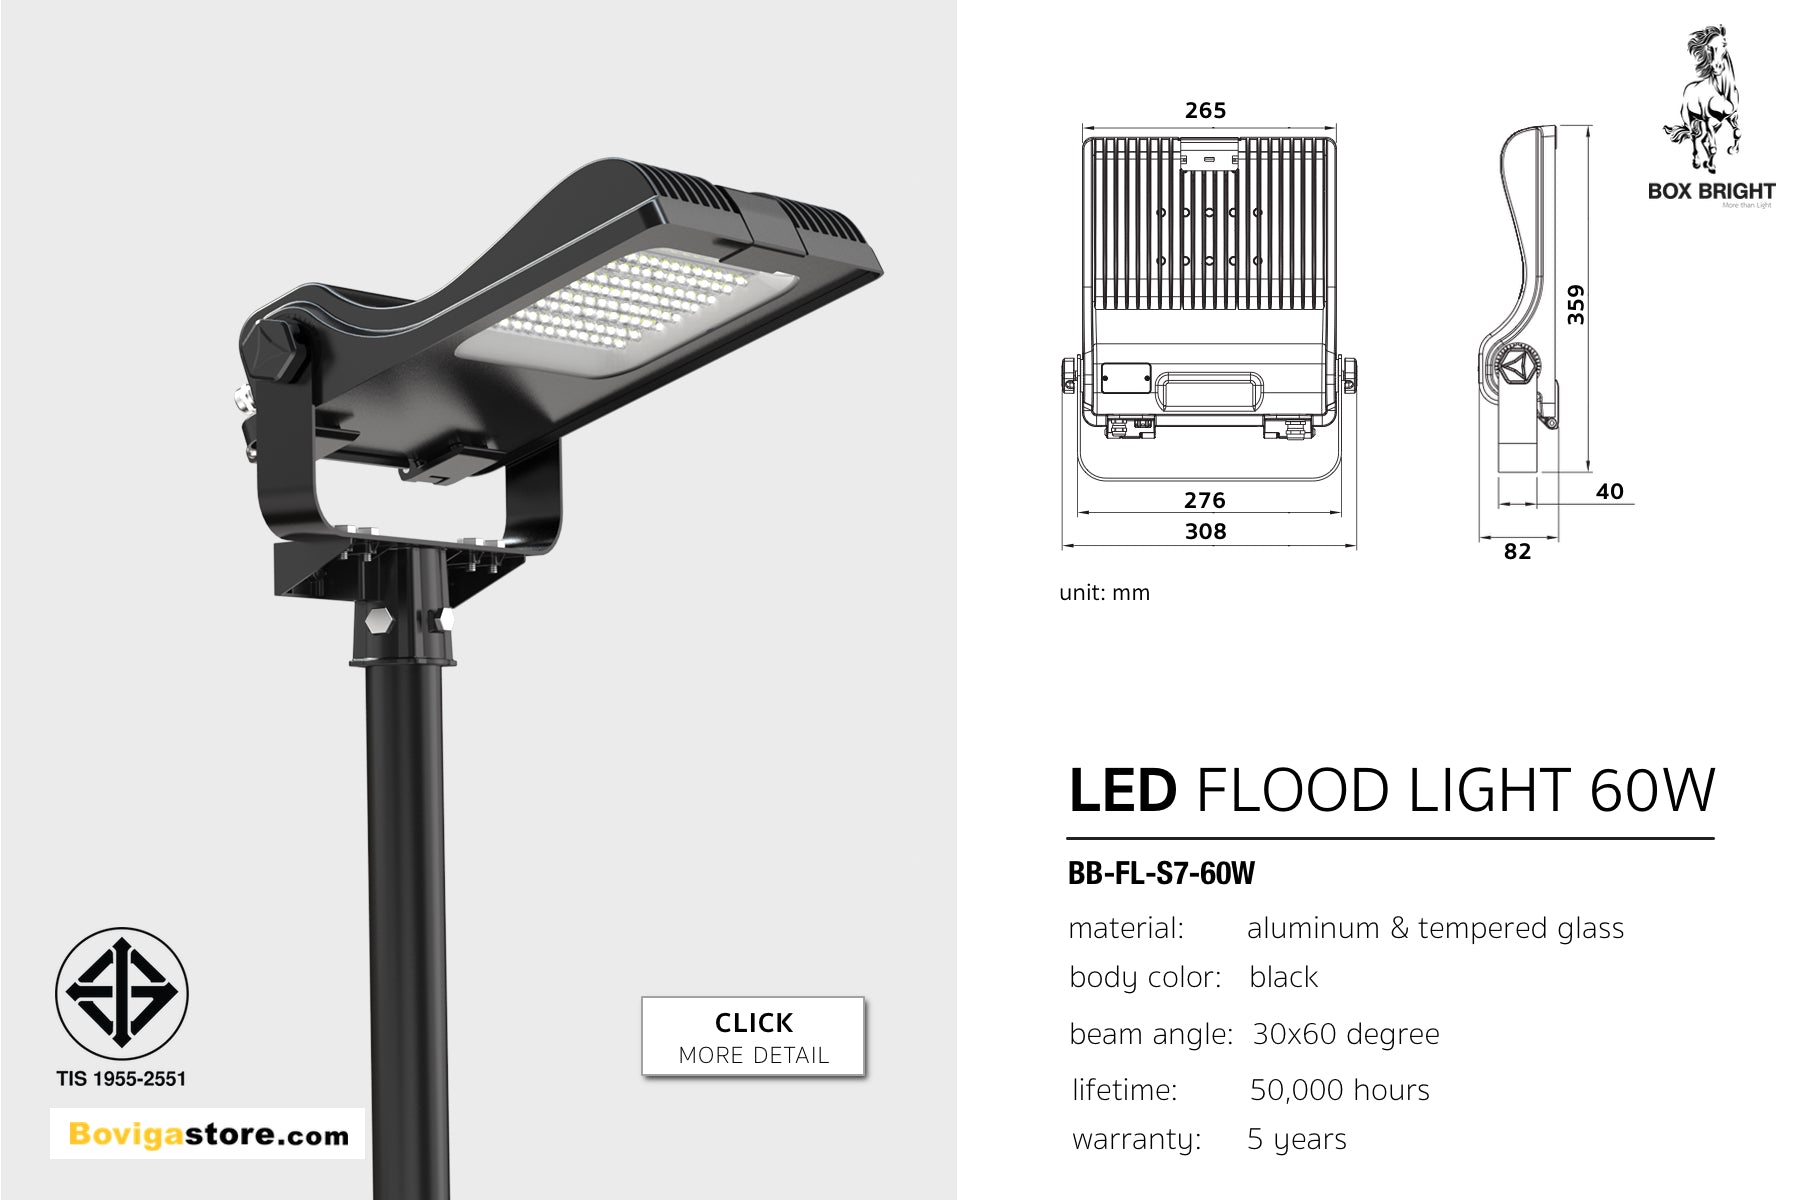 led flood light หรือ สปอร์ตไลท์ led ขนาด 60W สำหรับส่องป้าย ติดตั้งง่าย แข็งแรง ทนทาน